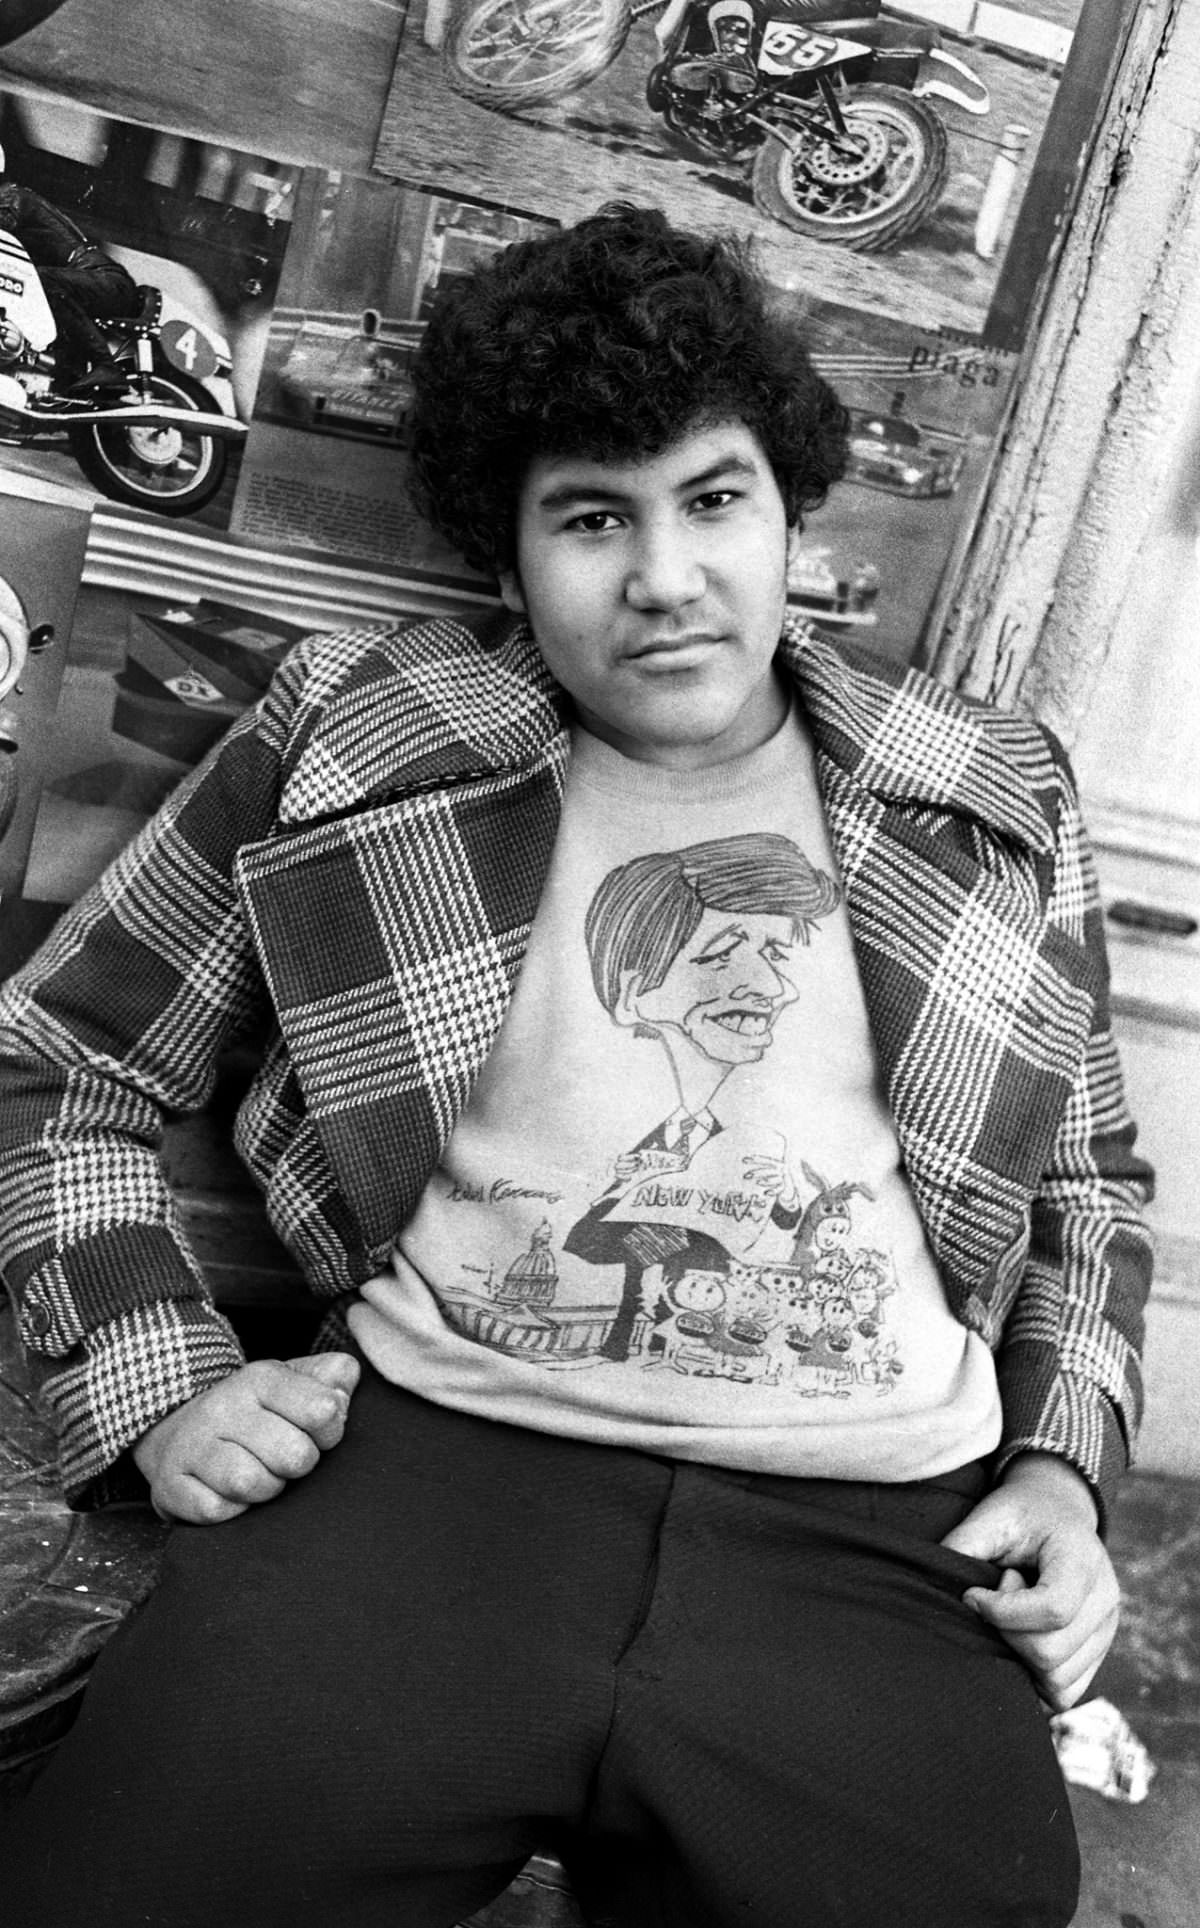 Big Fernando On East 3Rd Street, 1974.